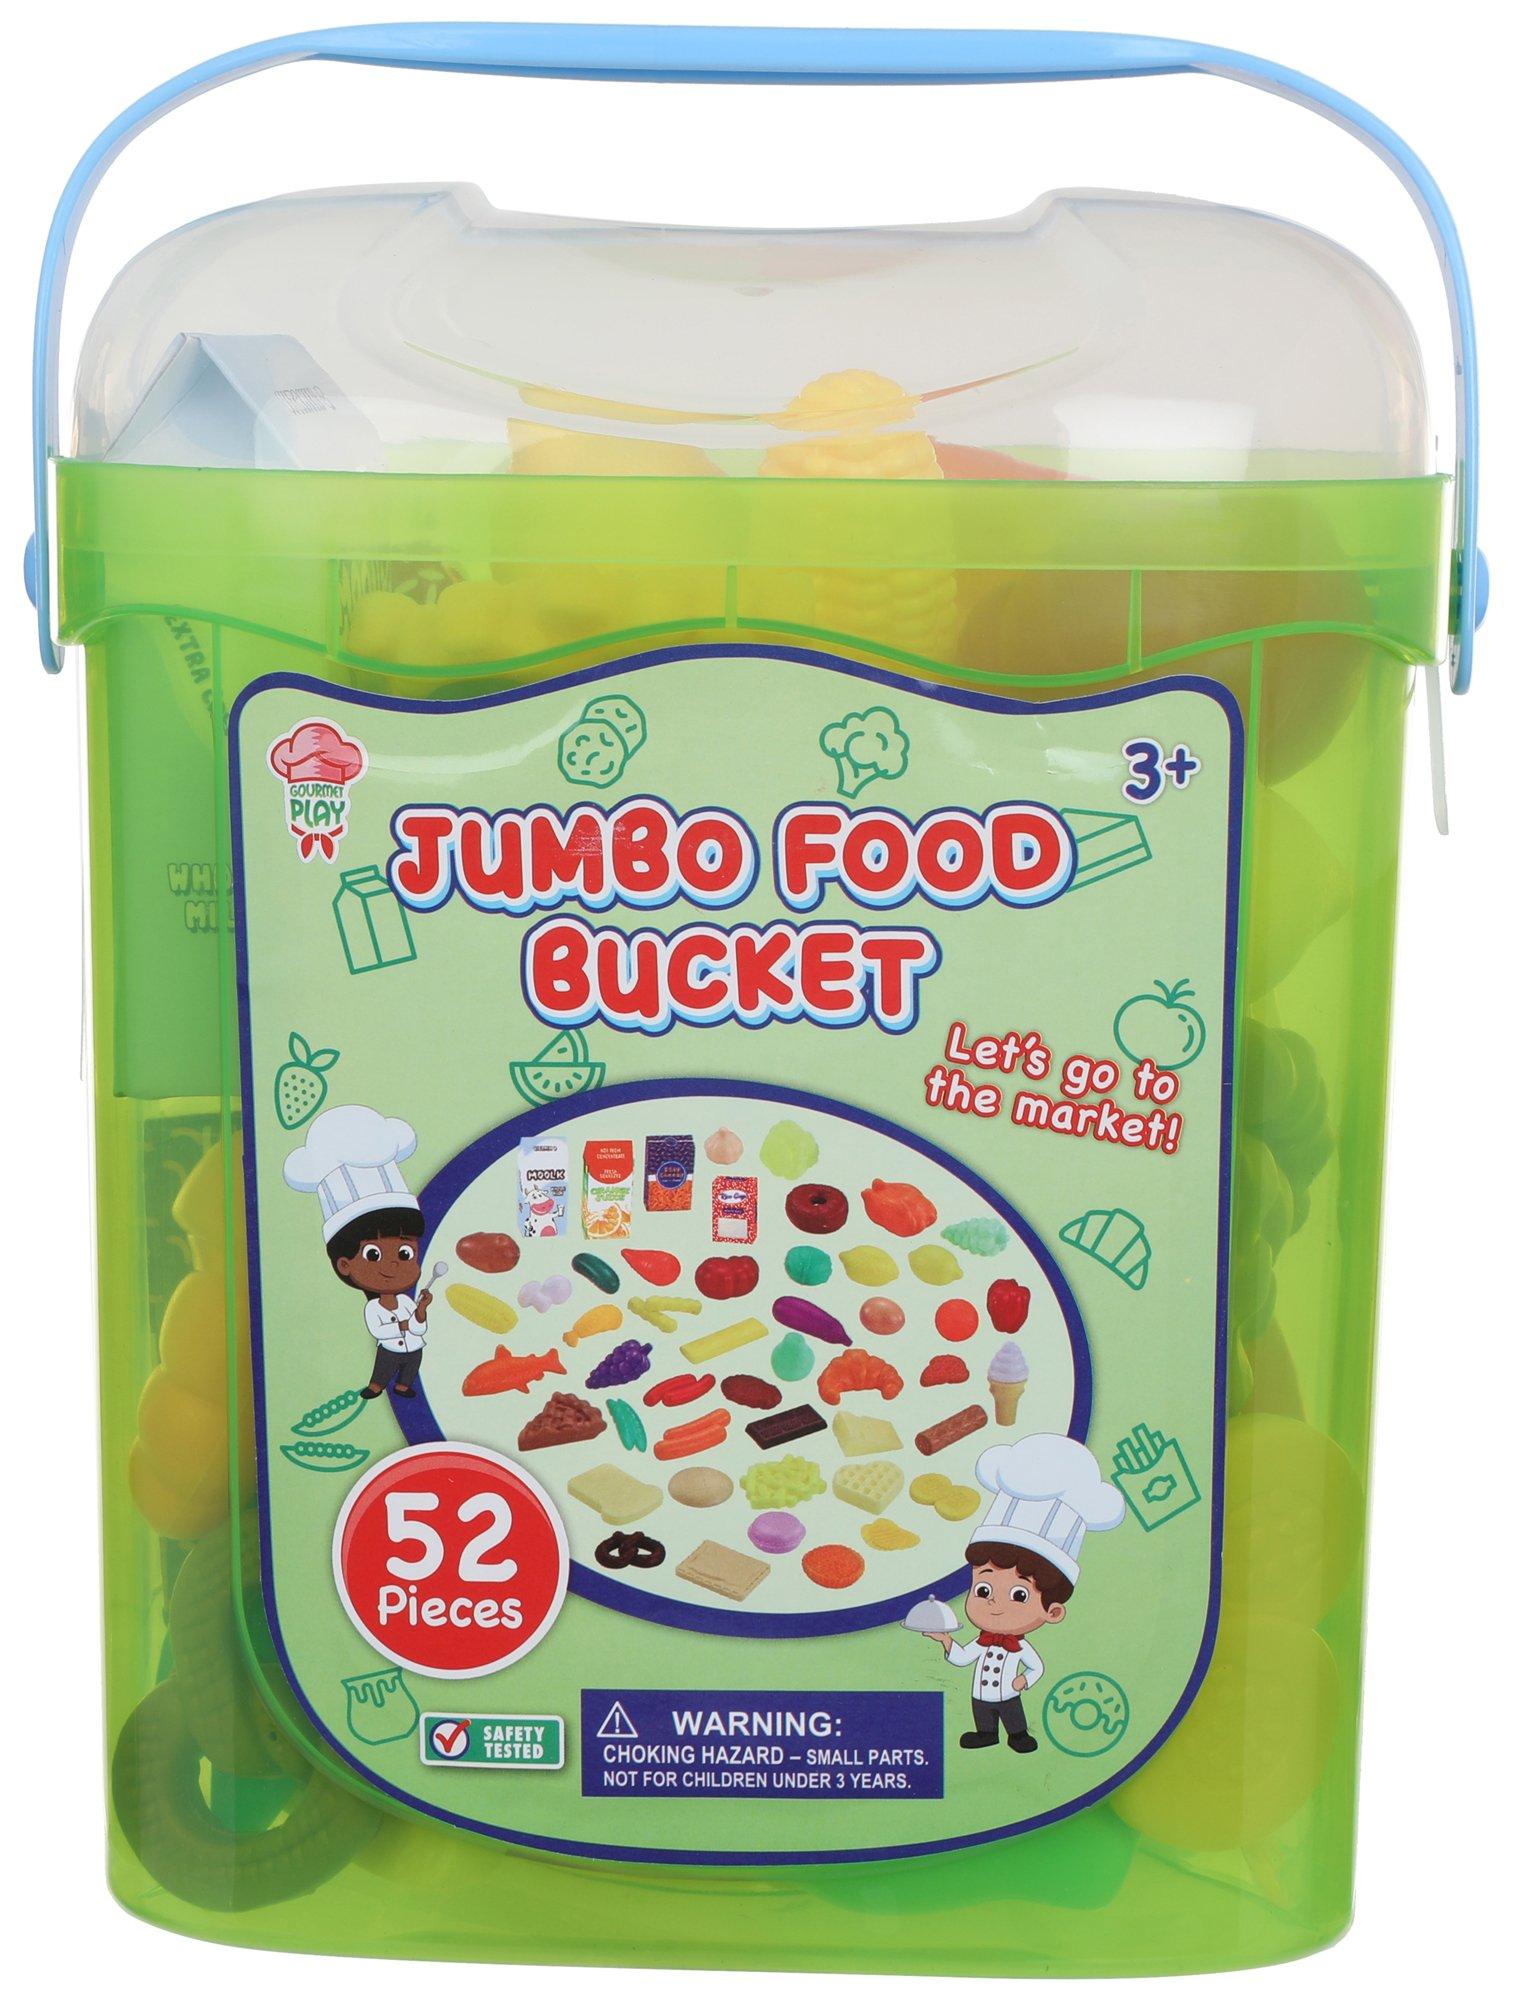 https://images.bealls.com/i/burkesoutlet/384-5517-6425-00-yyy/*52-Pc-Jumbo-Food-Bucket-Playset*?$BR_thumbnail$&fmt=auto&qlt=default